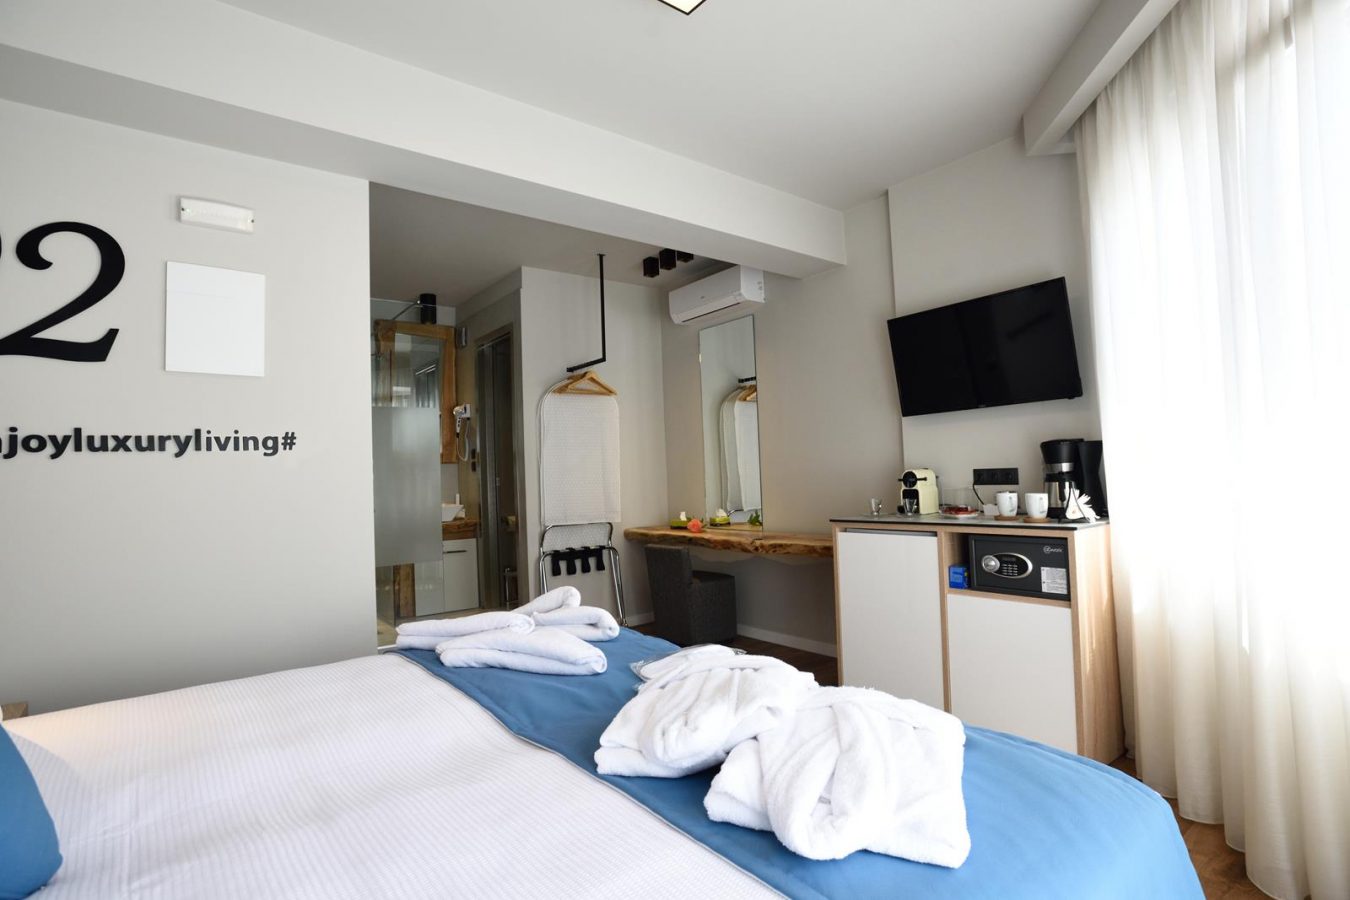 δωματια θεσσαλονικη κεντρο - magnifique luxury suites